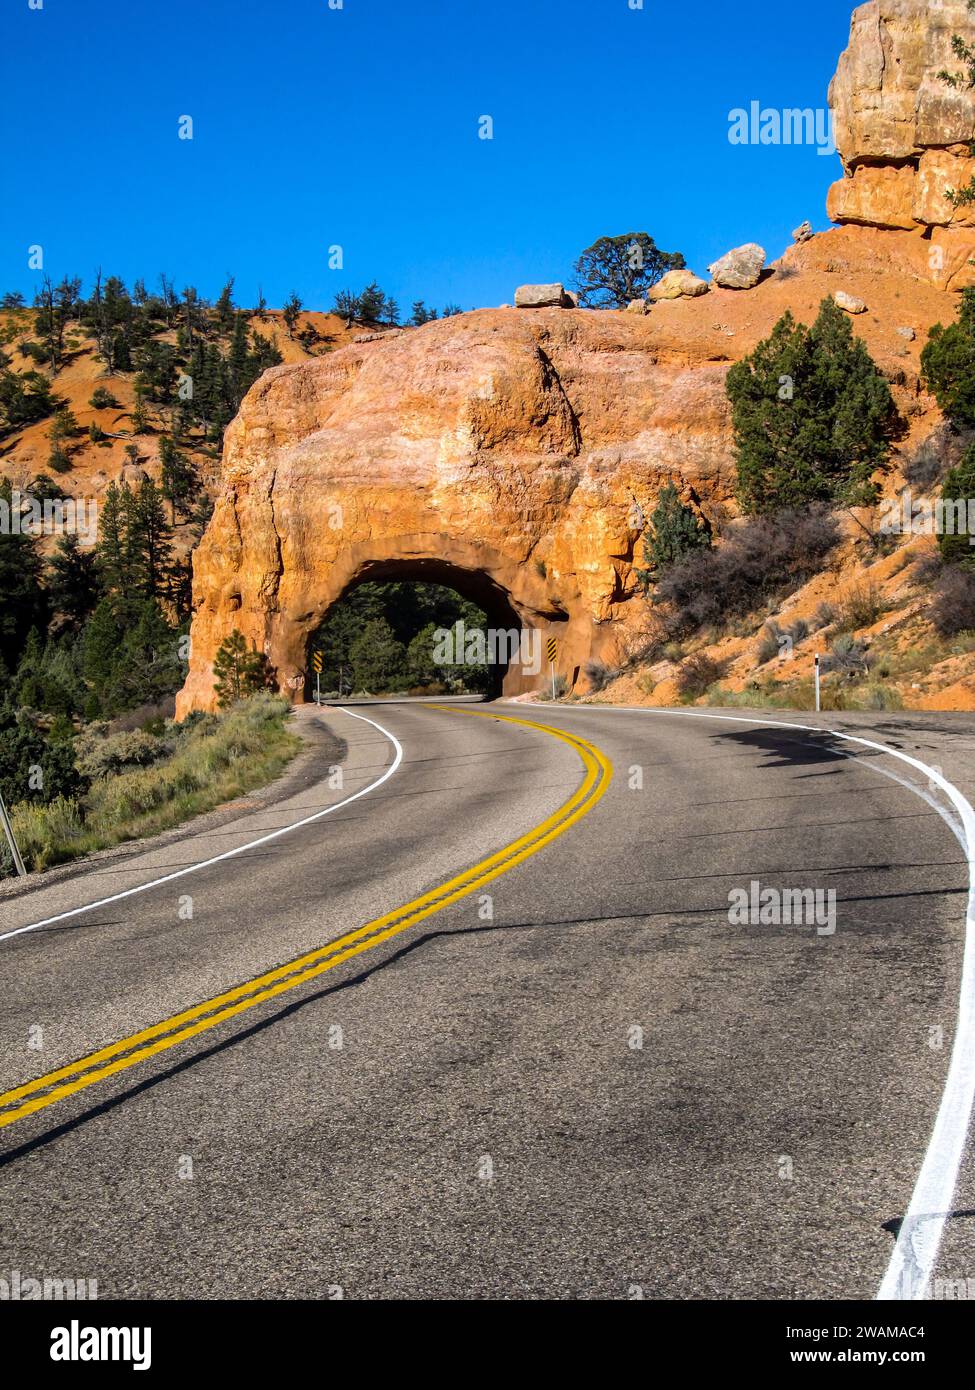 Arche apparemment enchantée au-dessus de la route, découpée dans les calcaires rouges du canyon rouge le long de la Scenic Byway 12 dans l'Utah. Banque D'Images